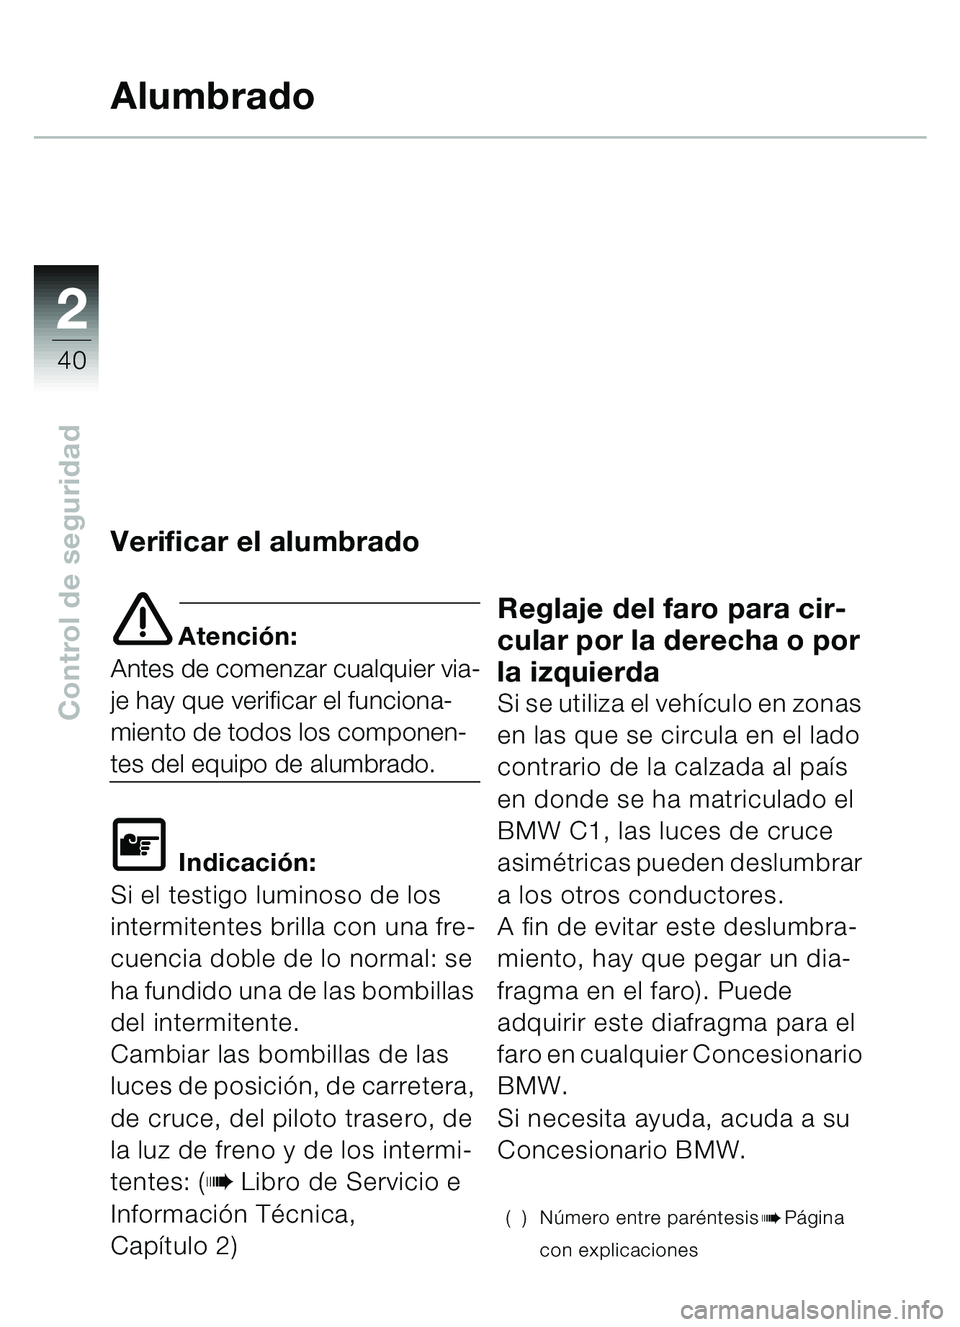 BMW MOTORRAD C1 2000  Manual de instrucciones (in Spanish) 2
40
Control de seguridad
Alumbrado
Verificar el alumbrado
e Atención:
Antes de comenzar cualquier via-
je hay que verificar el funciona-
miento de todos los componen-
tes del equipo de alumbrado.
\f